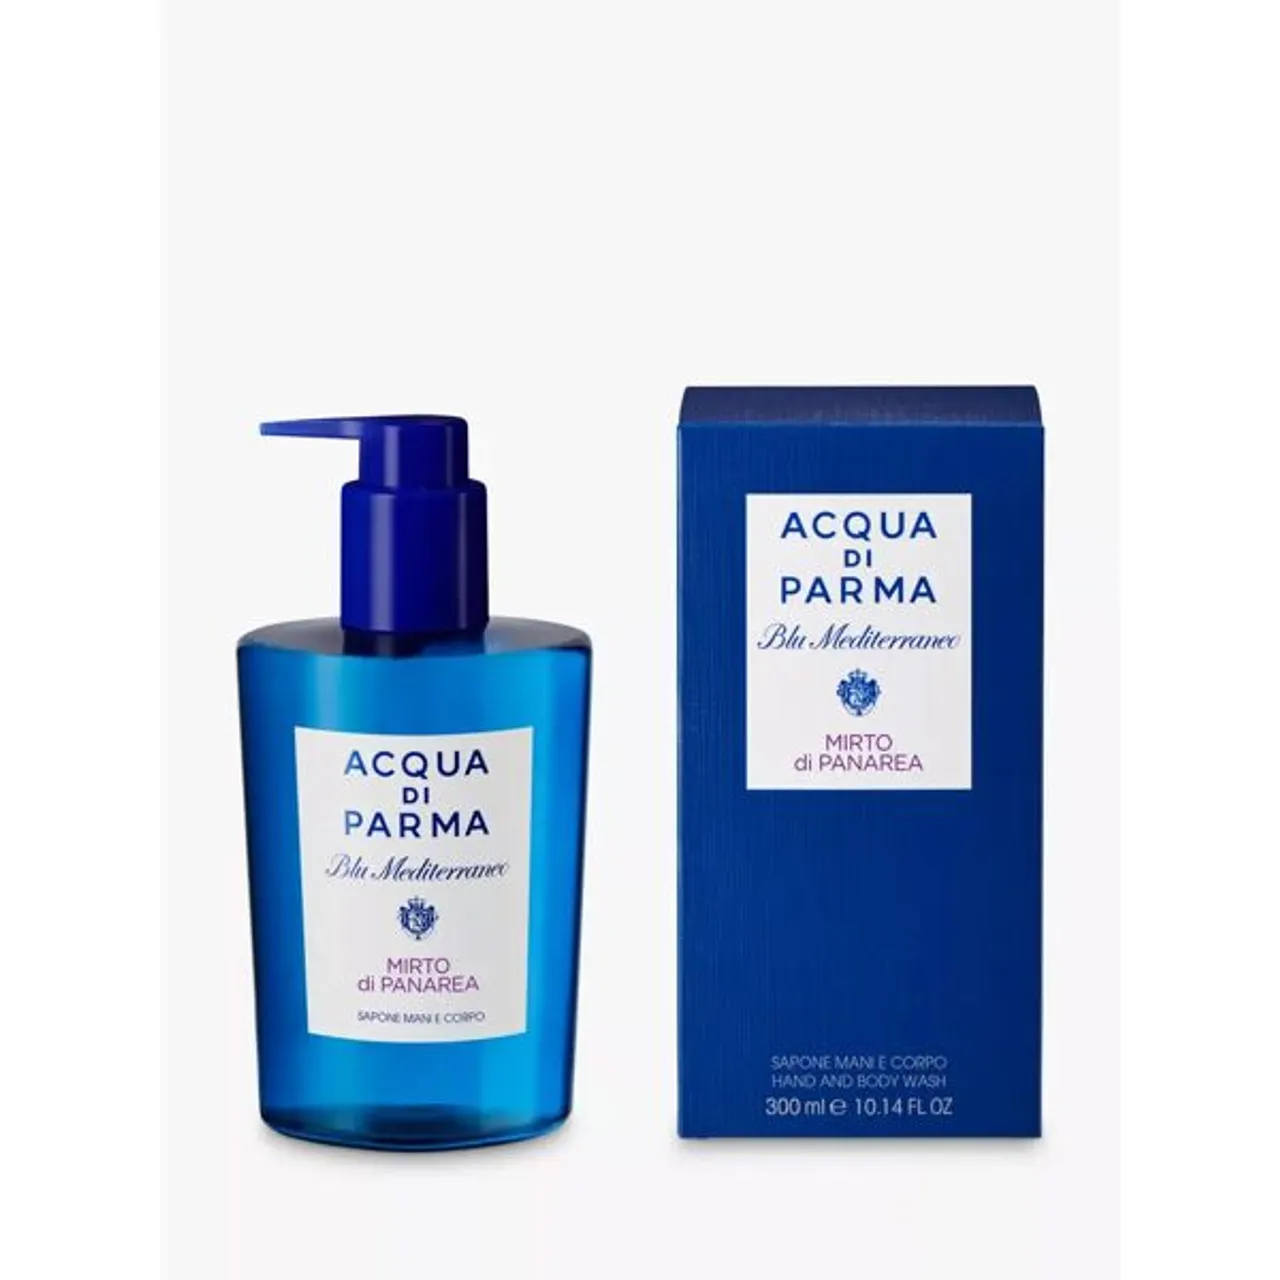 Acqua di Parma Blu Mediterraneo Mirto di Panarea Hand and Body Wash, 300ml - Male - Size: 300ml